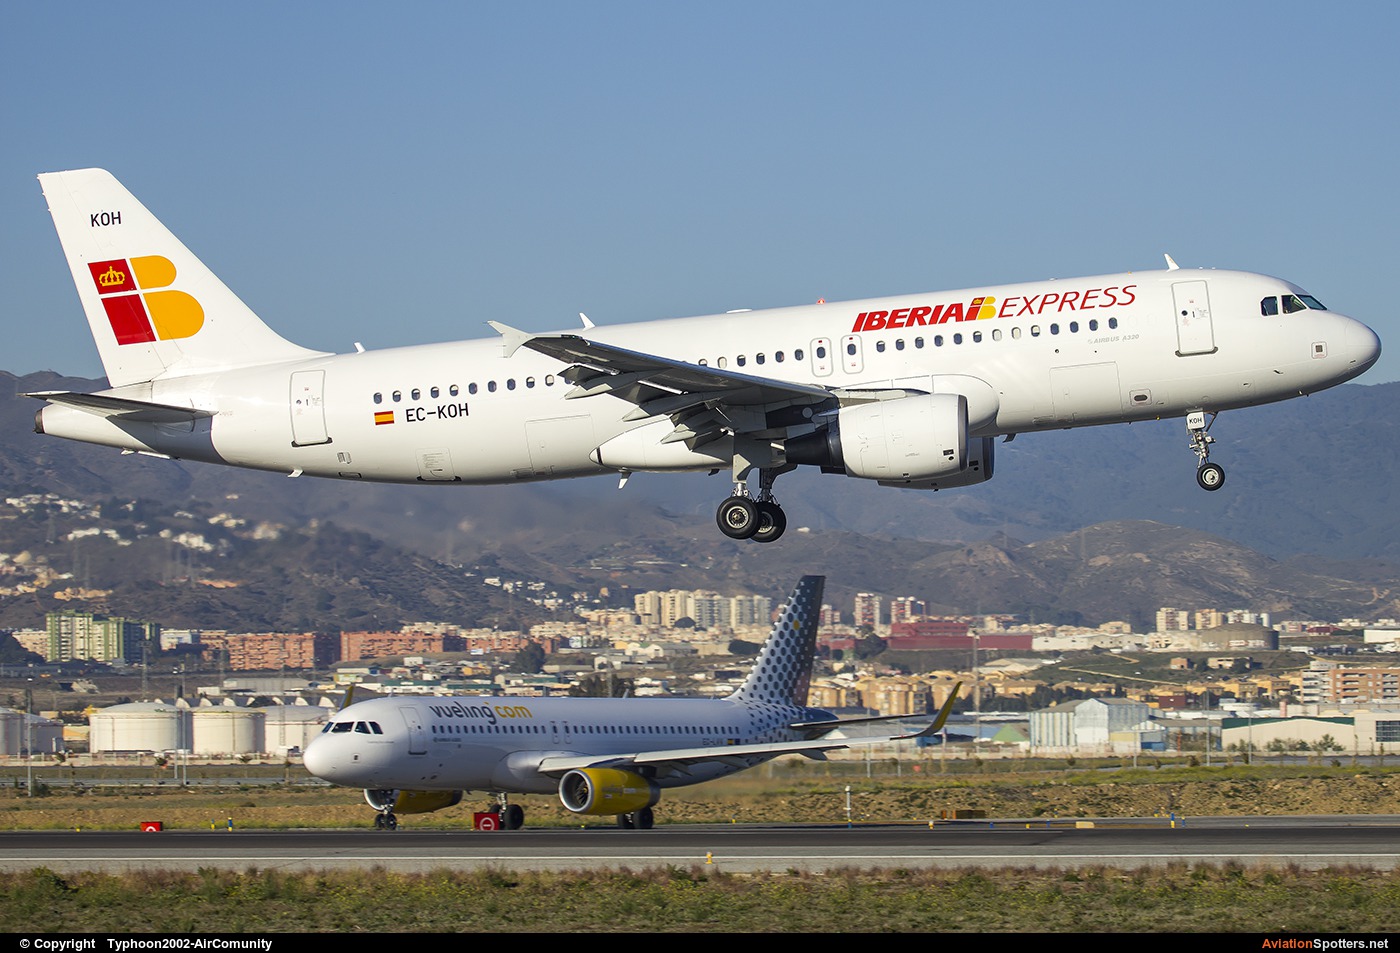 Iberia  -  A320  (EC-KOH) By Typhoon2002-AirComunity (AirComunity)